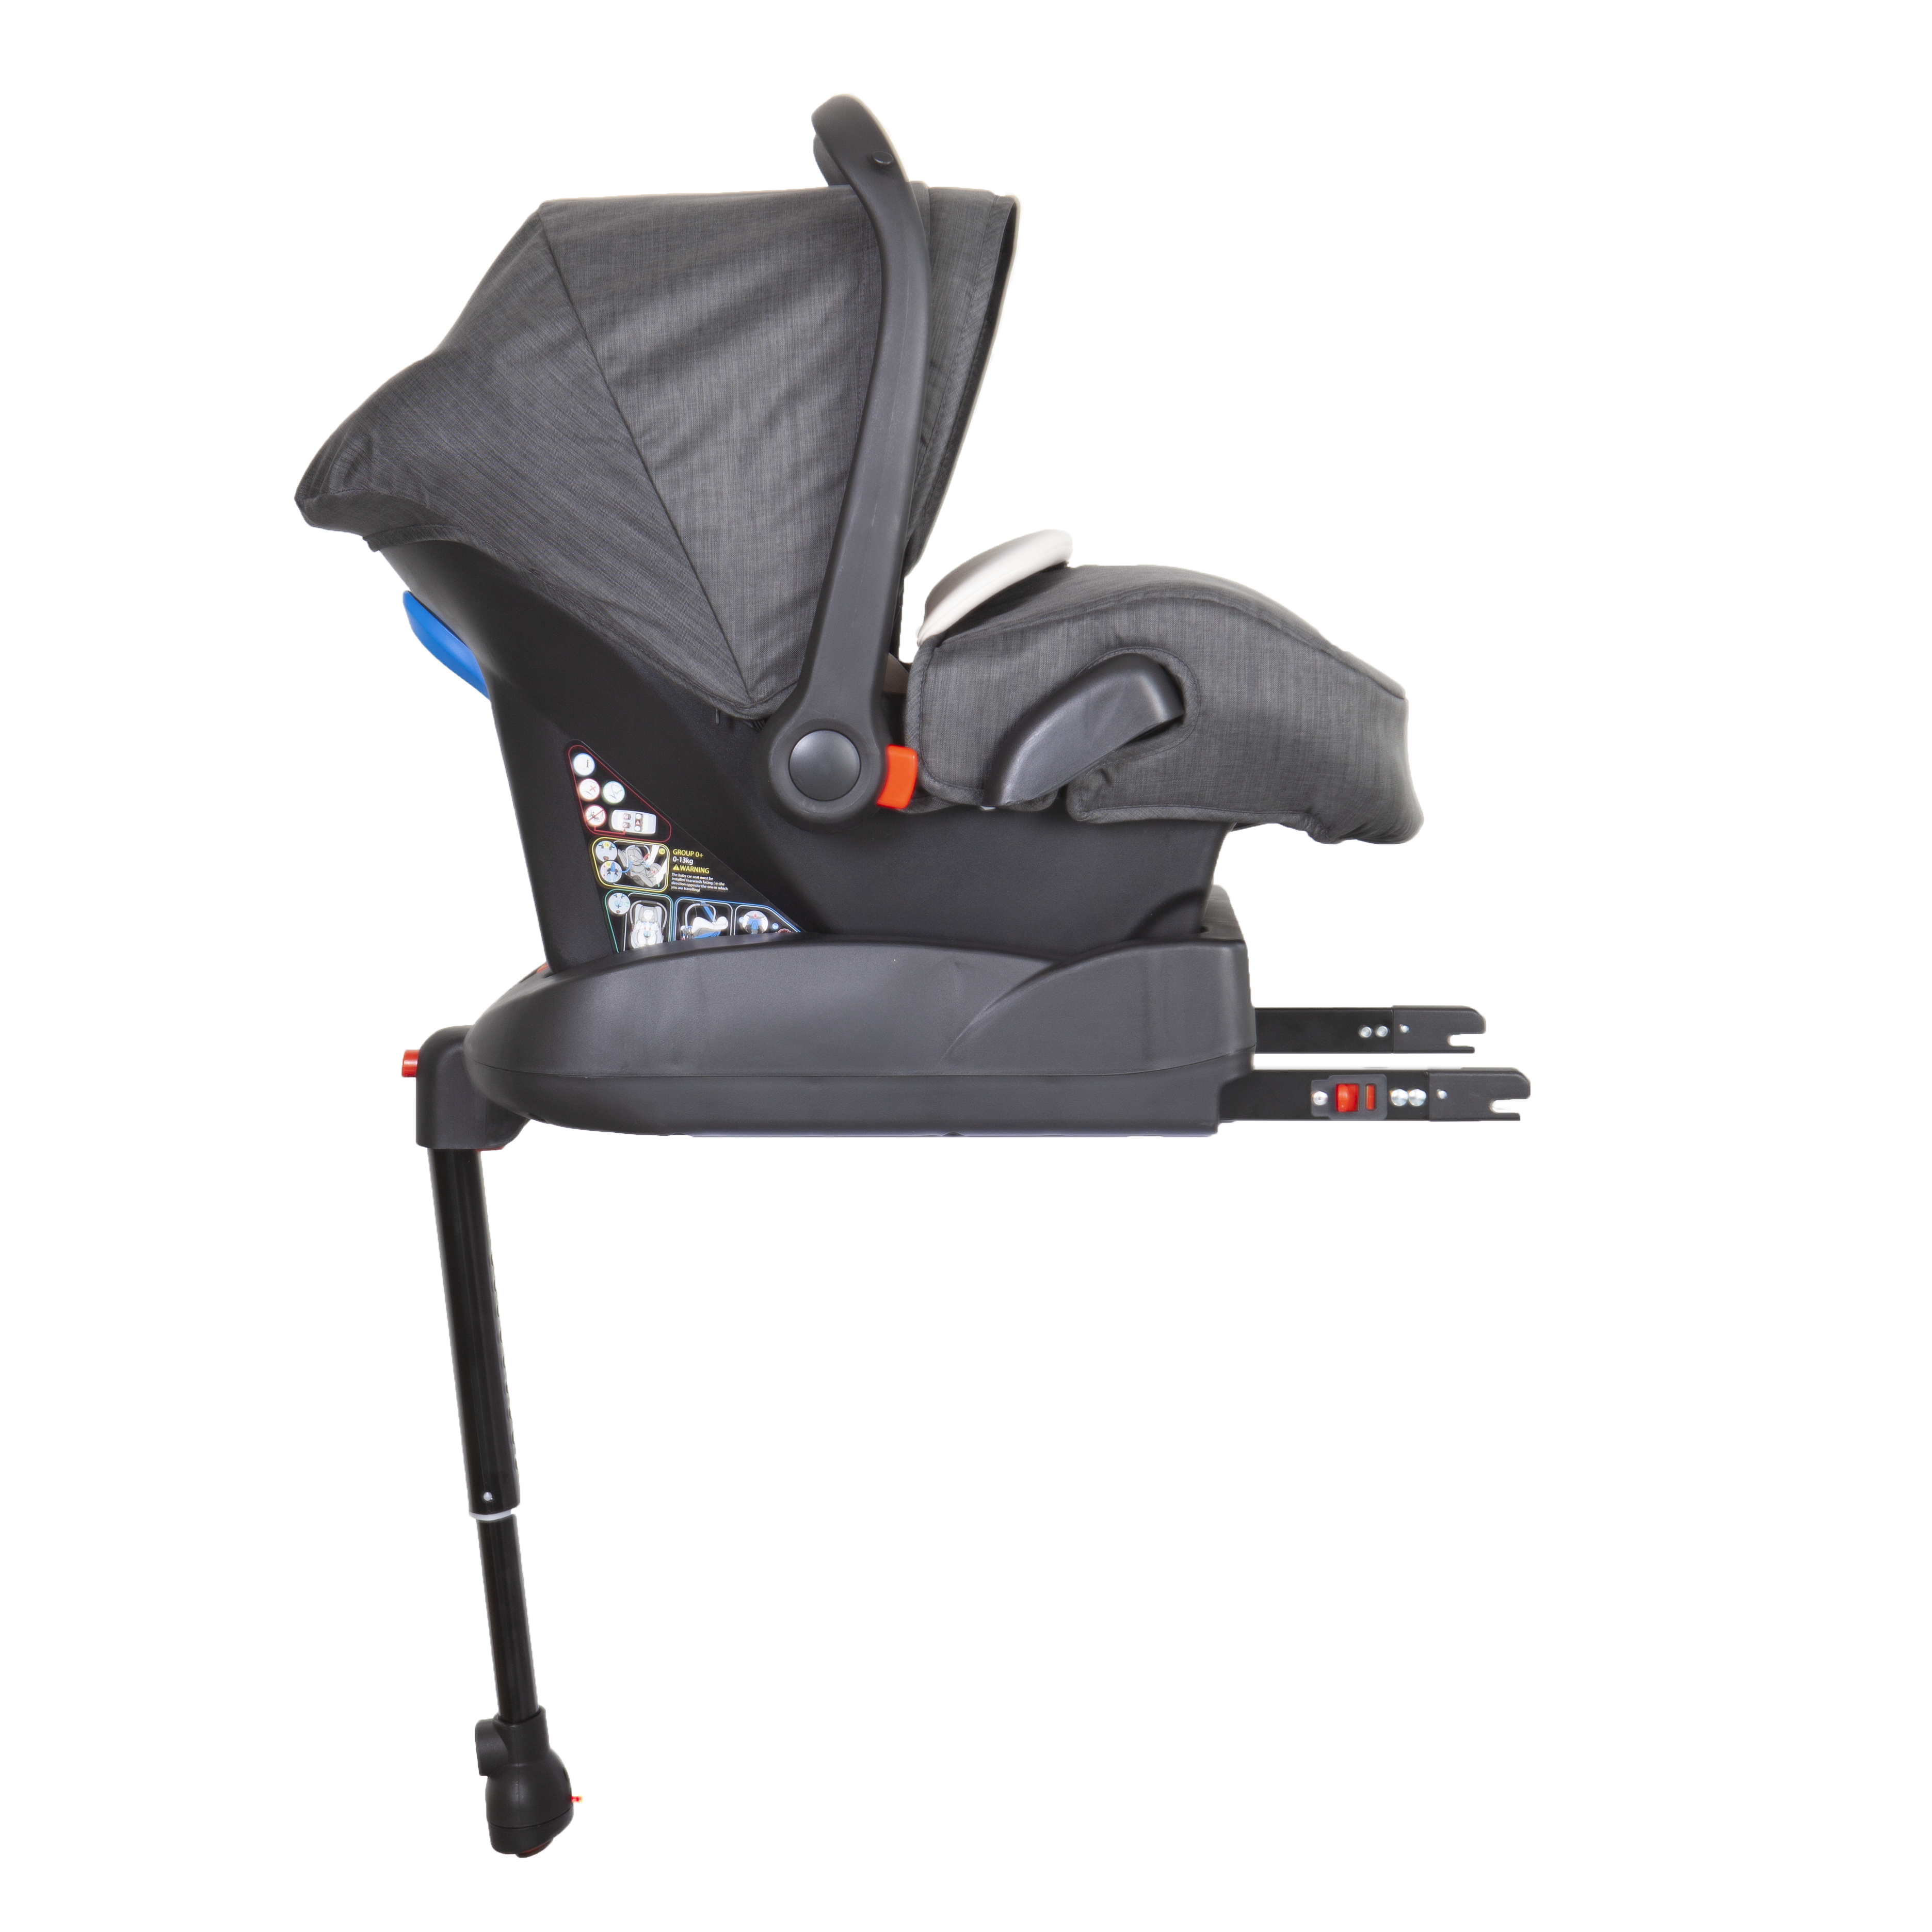 YKO - 709 Infant Car Seat Isofix Base